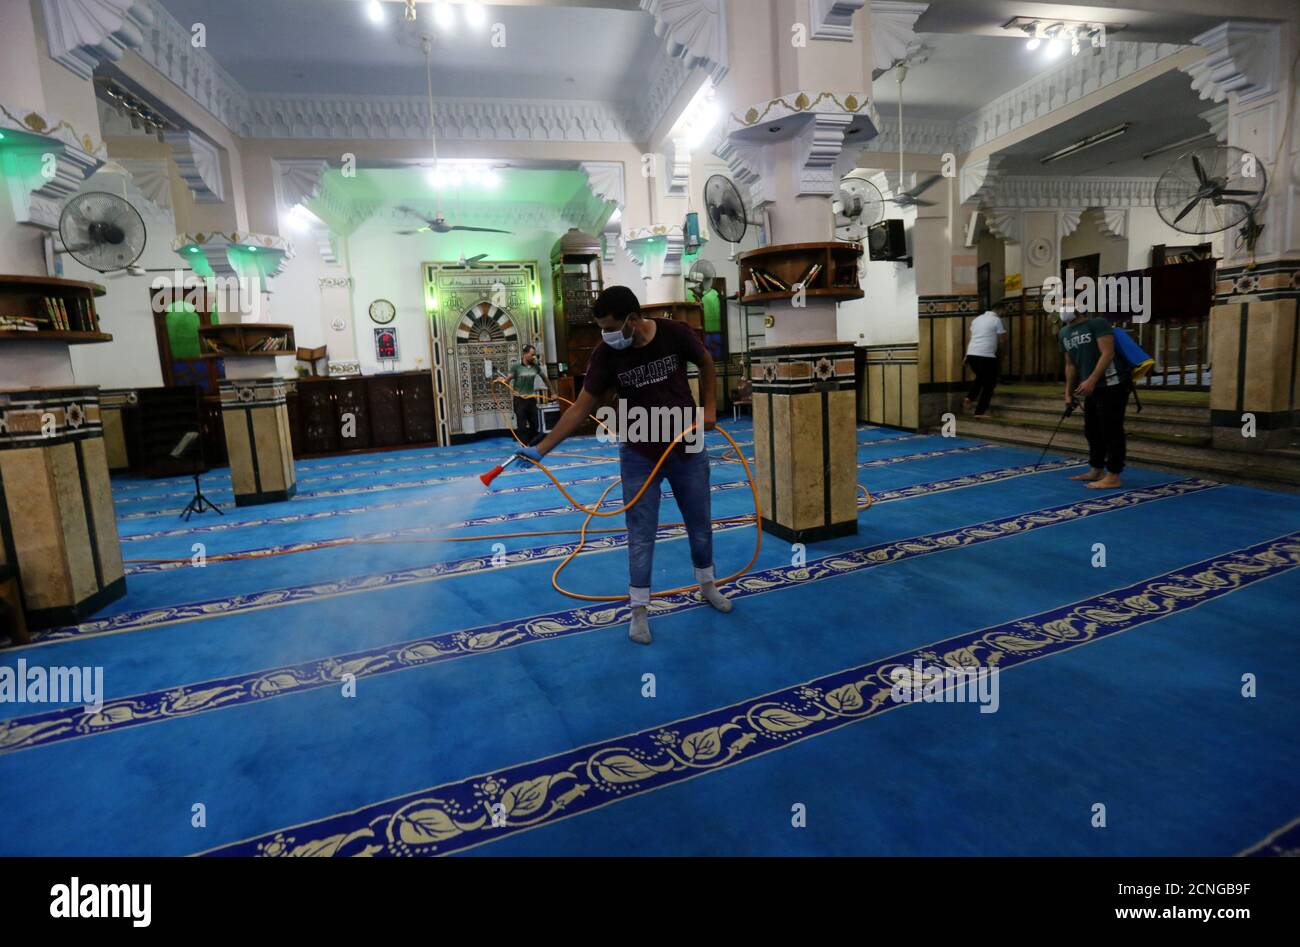 Los voluntarios que usan mascarillas pulverizan desinfectante dentro de una mezquita, ya que está preparada para la oración después de ser reabierta, después del brote de la enfermedad coronavirus (COVID-19), en el Cairo, Egipto, 26 de junio de 2020. REUTERS/Mohamed Abd el Ghany Foto de stock